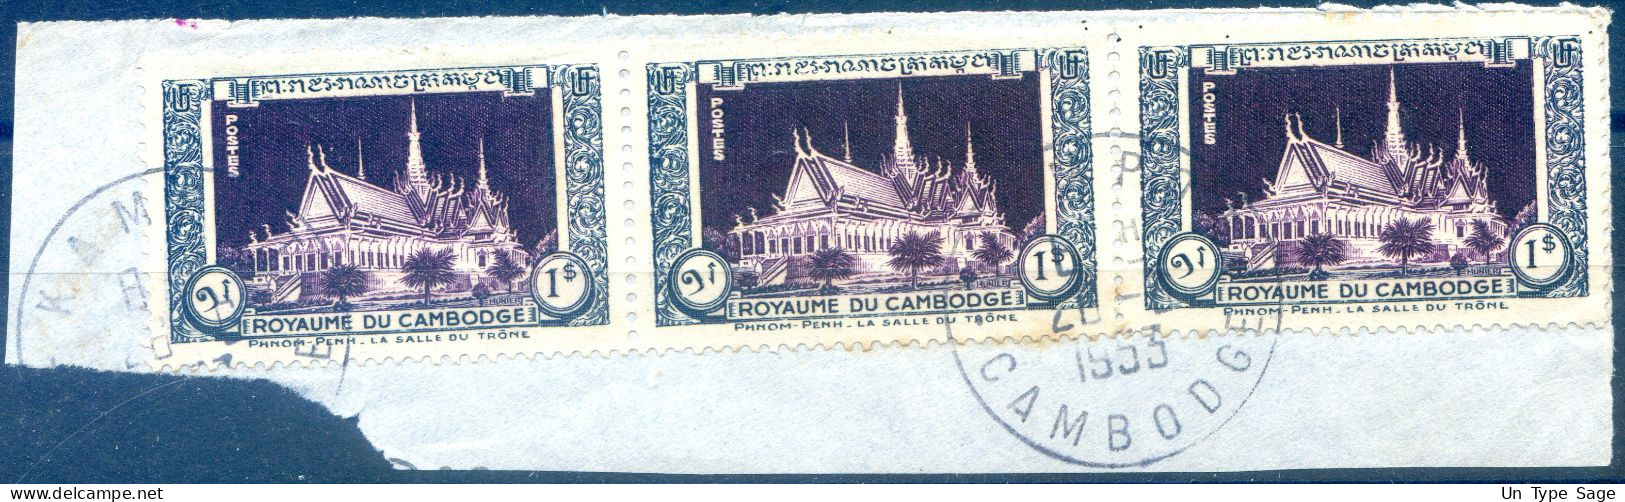 Cambodge, TAD PHNOM PENH 1953 - (F359) - Cambodia